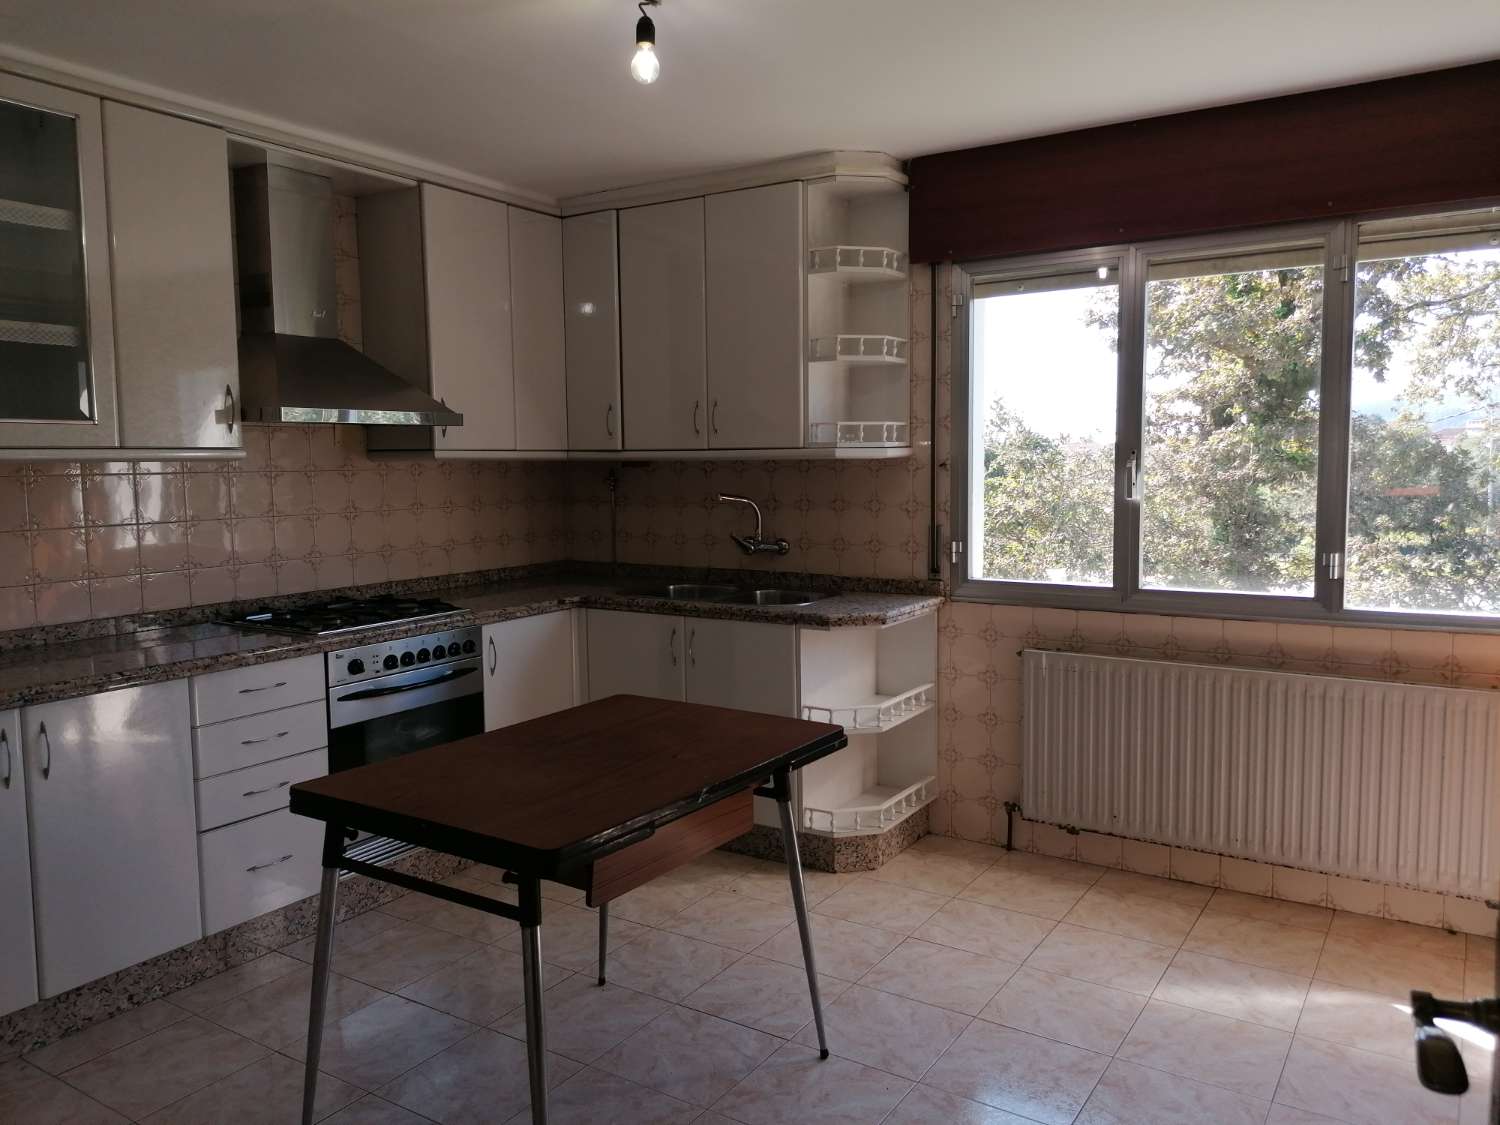 Pontevedra: A7134: Huis met finca te koop op 4 km van Pontevedra...